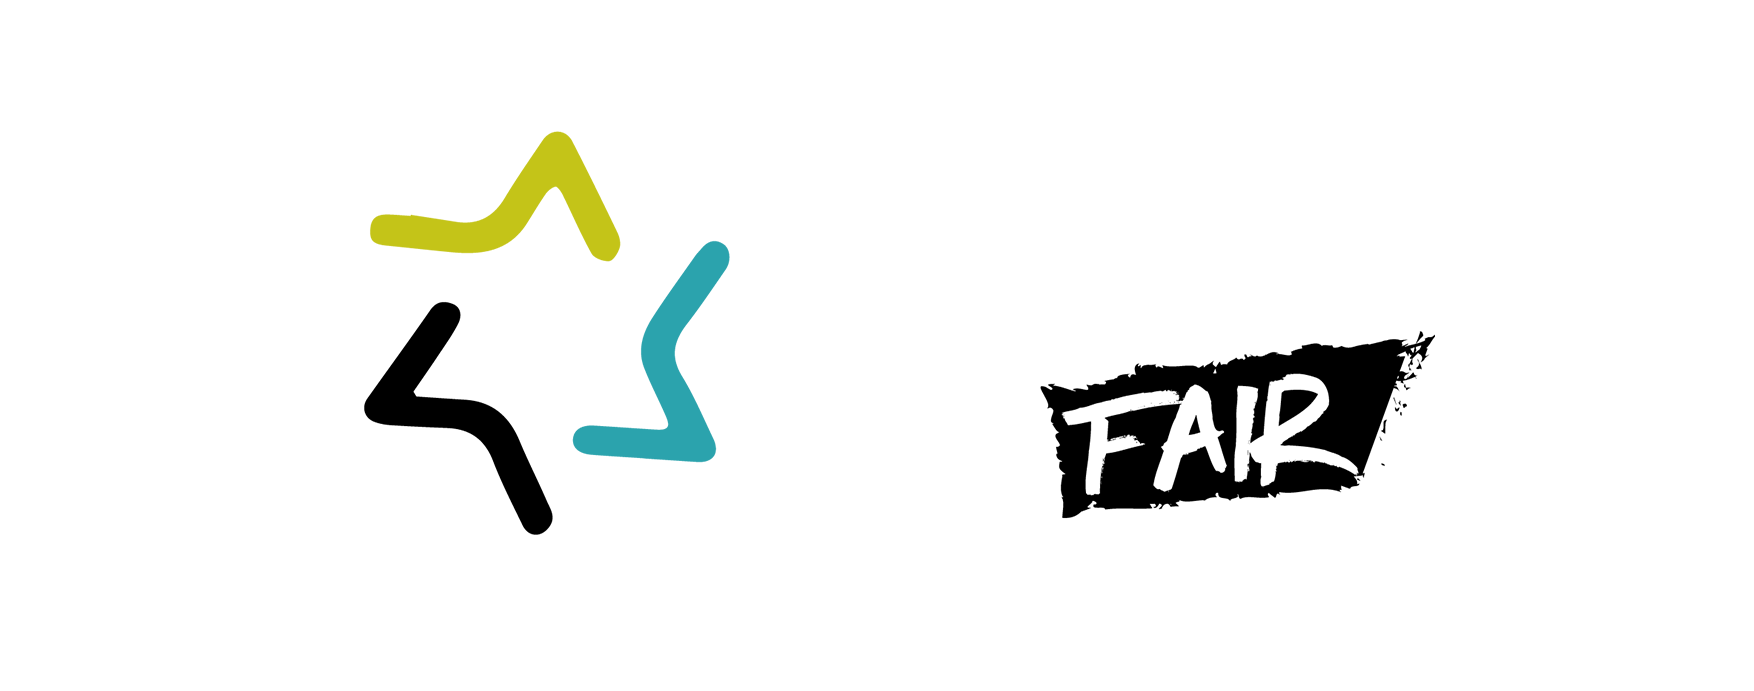 STARfair